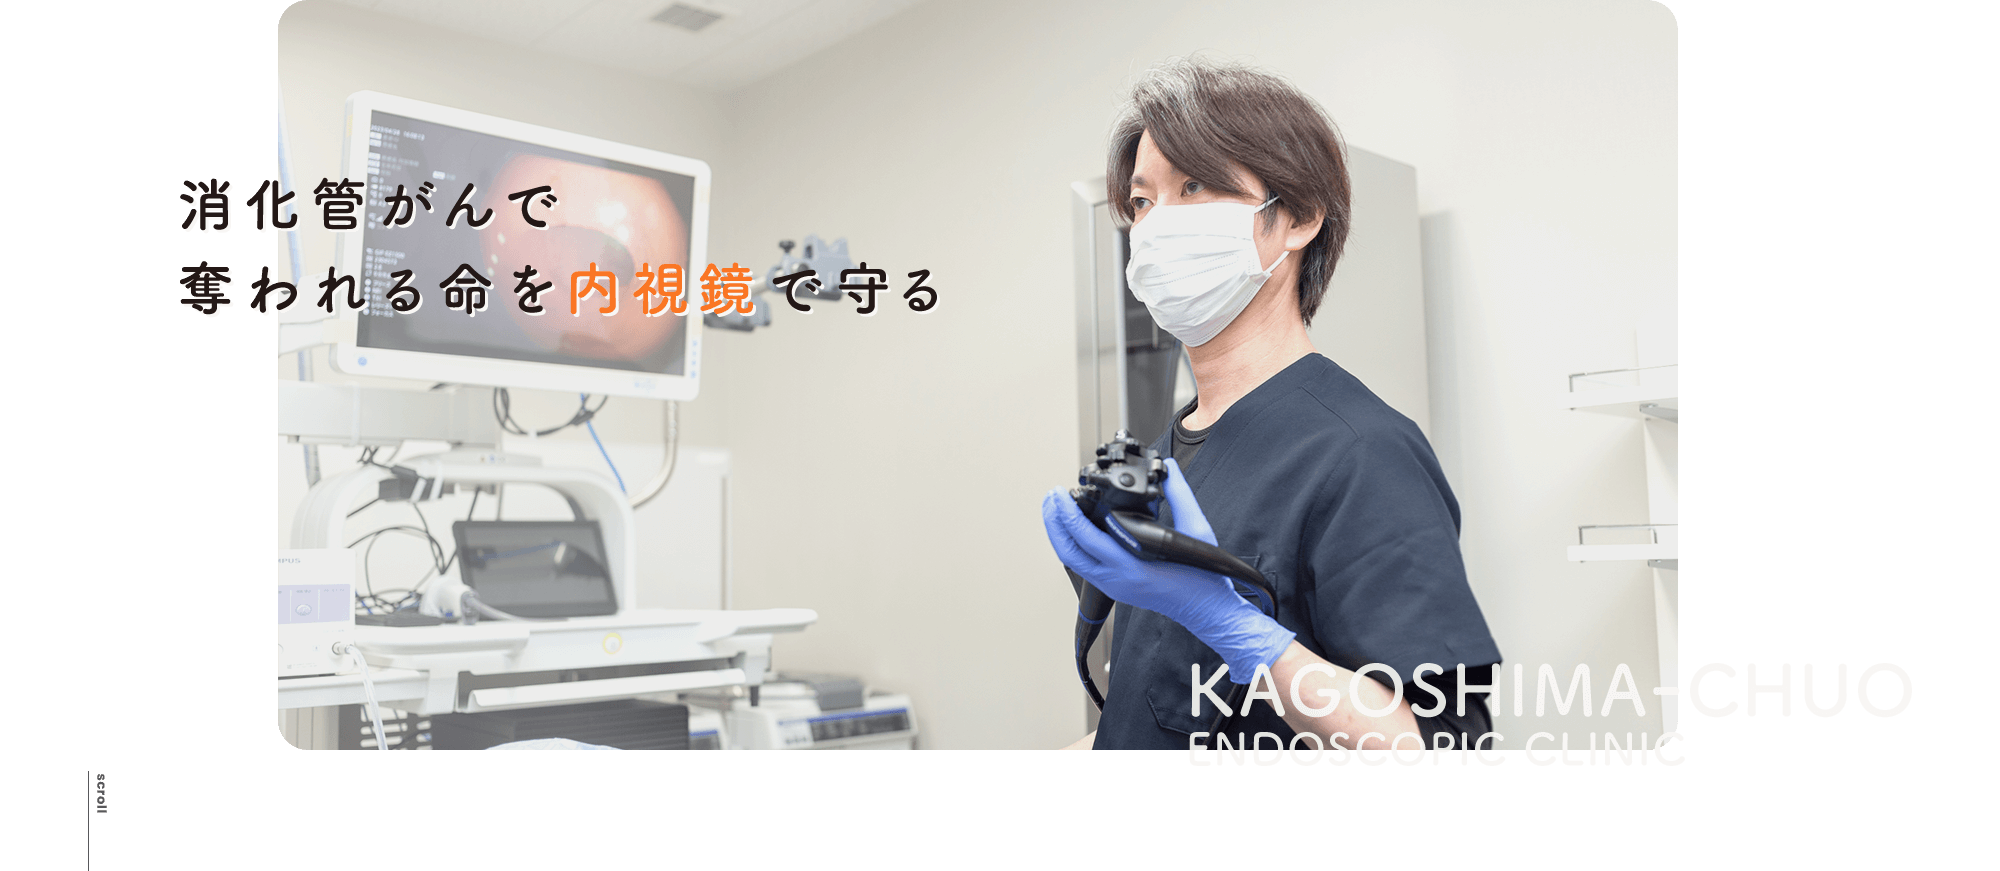 消化管がんで奪われる命を内視鏡で守る KAGOSHIMA-CHUO ENDSCOPIC CLINIC